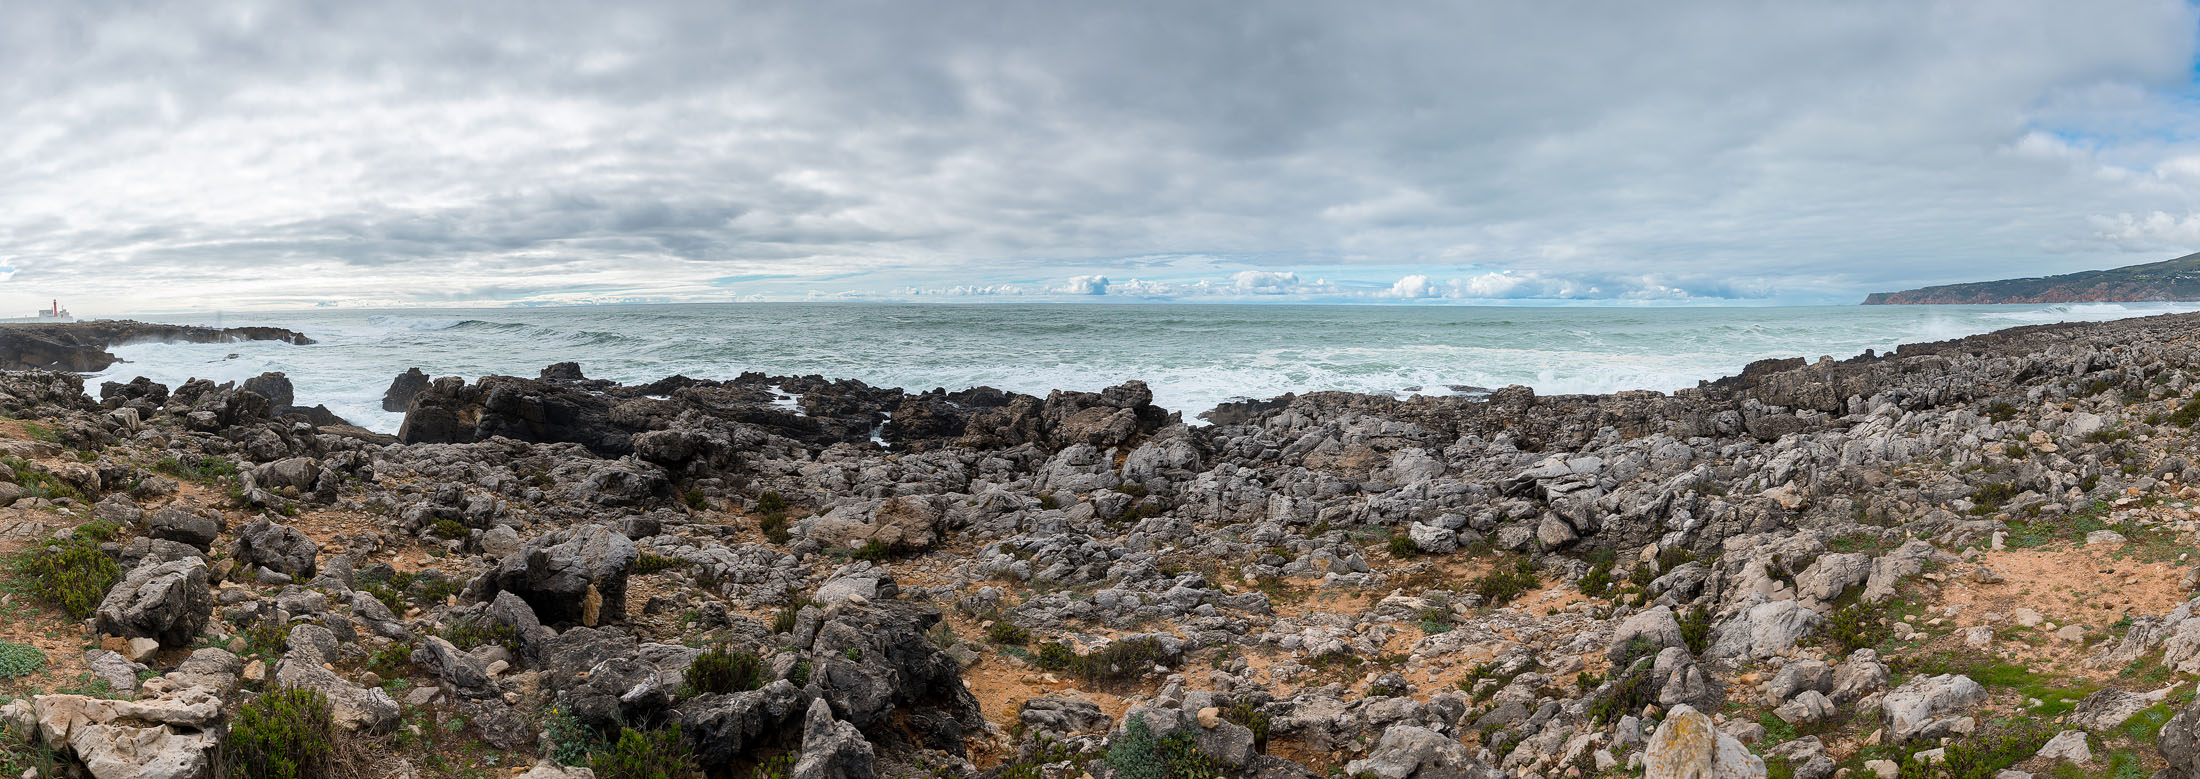 Atlantic Ocean. Portugal-017